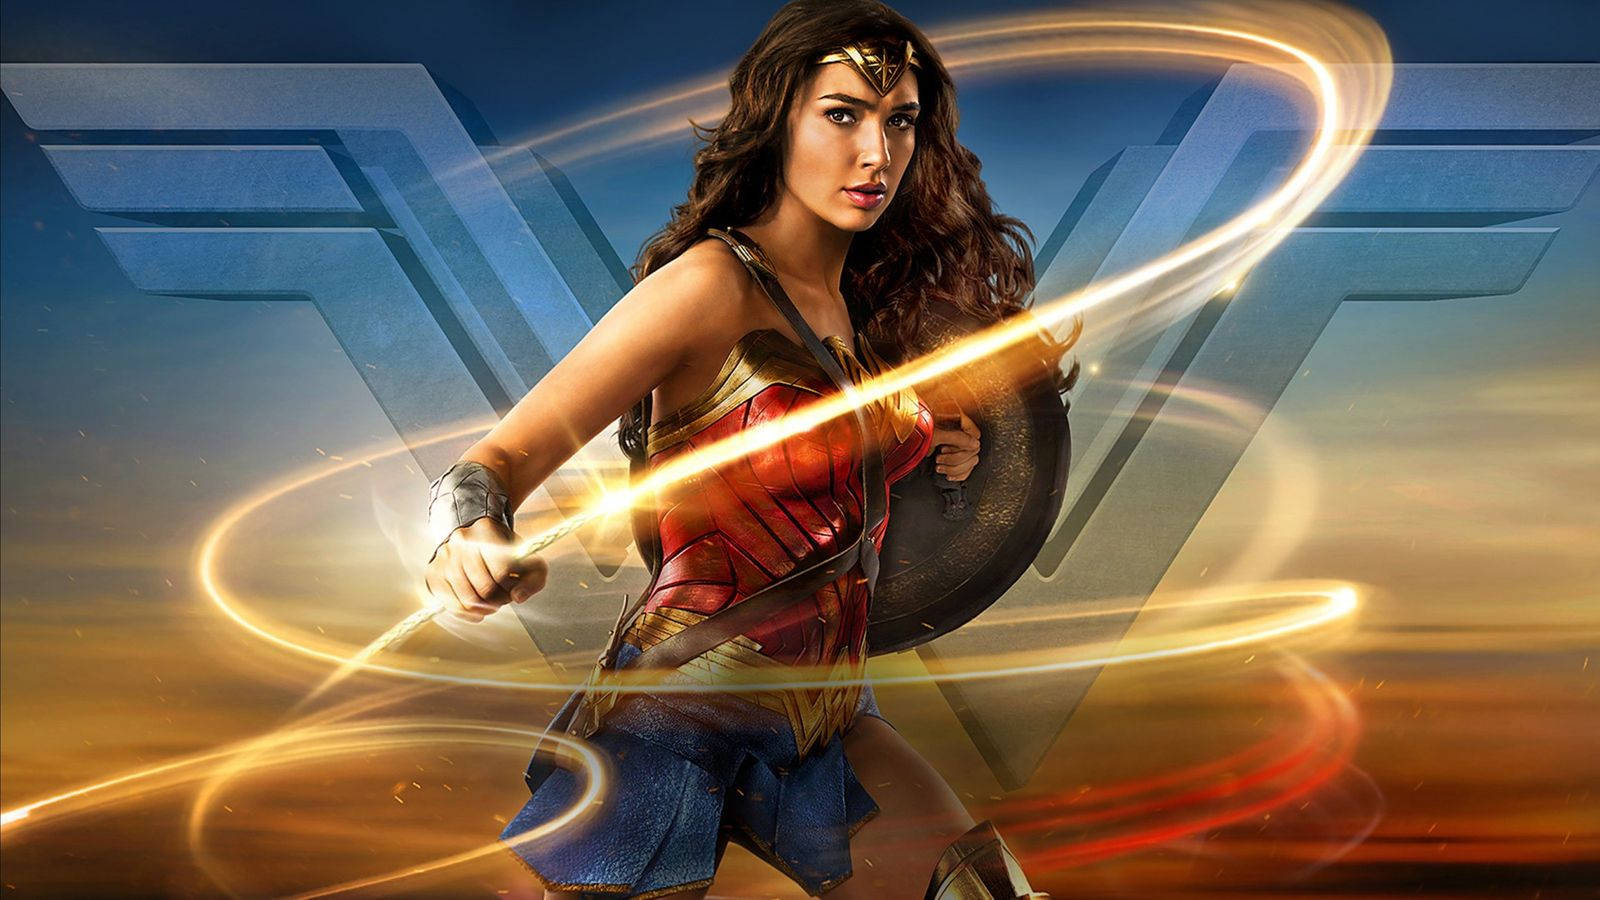 Gal Gadot as Wonder Woman, 2017 Wallpaper